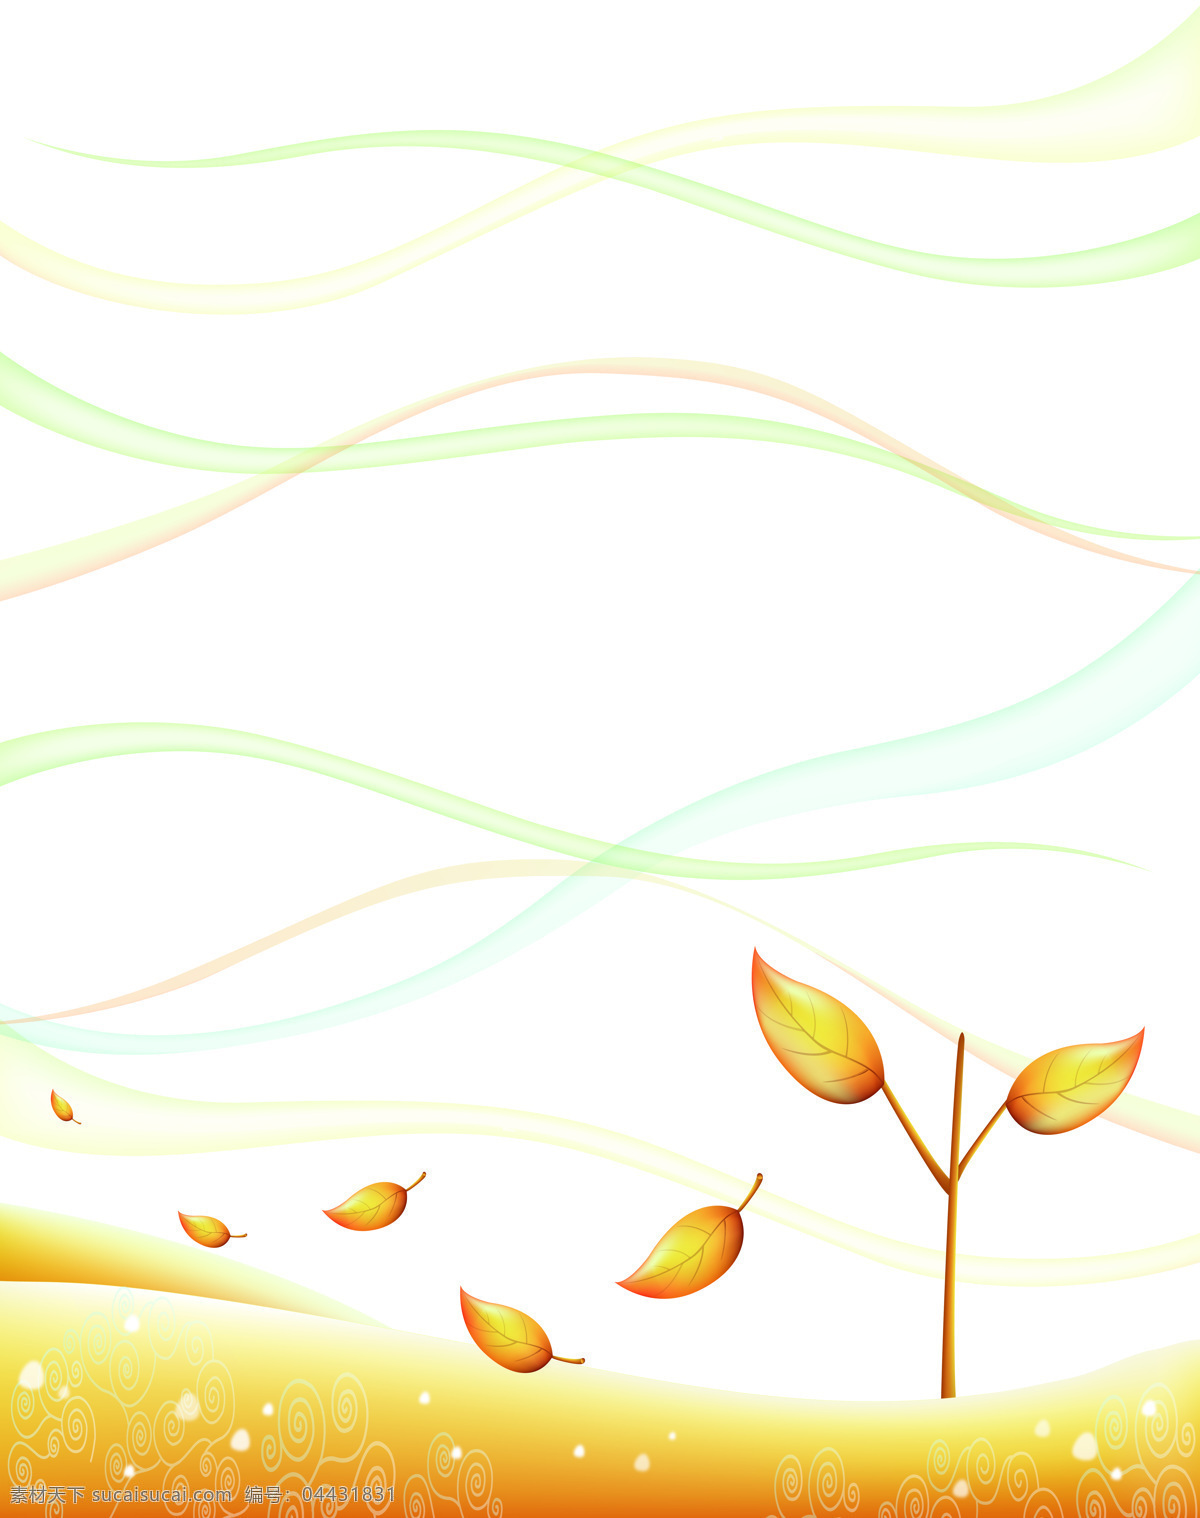 简单生活 移门 图案 树叶 叶 飘荡的树叶 金黄 吹拂的风 简单 自然 移门图片 移门素材 移门图 玻璃移门 移门花纹 屏风图案 移门图库 移门图案 文化艺术